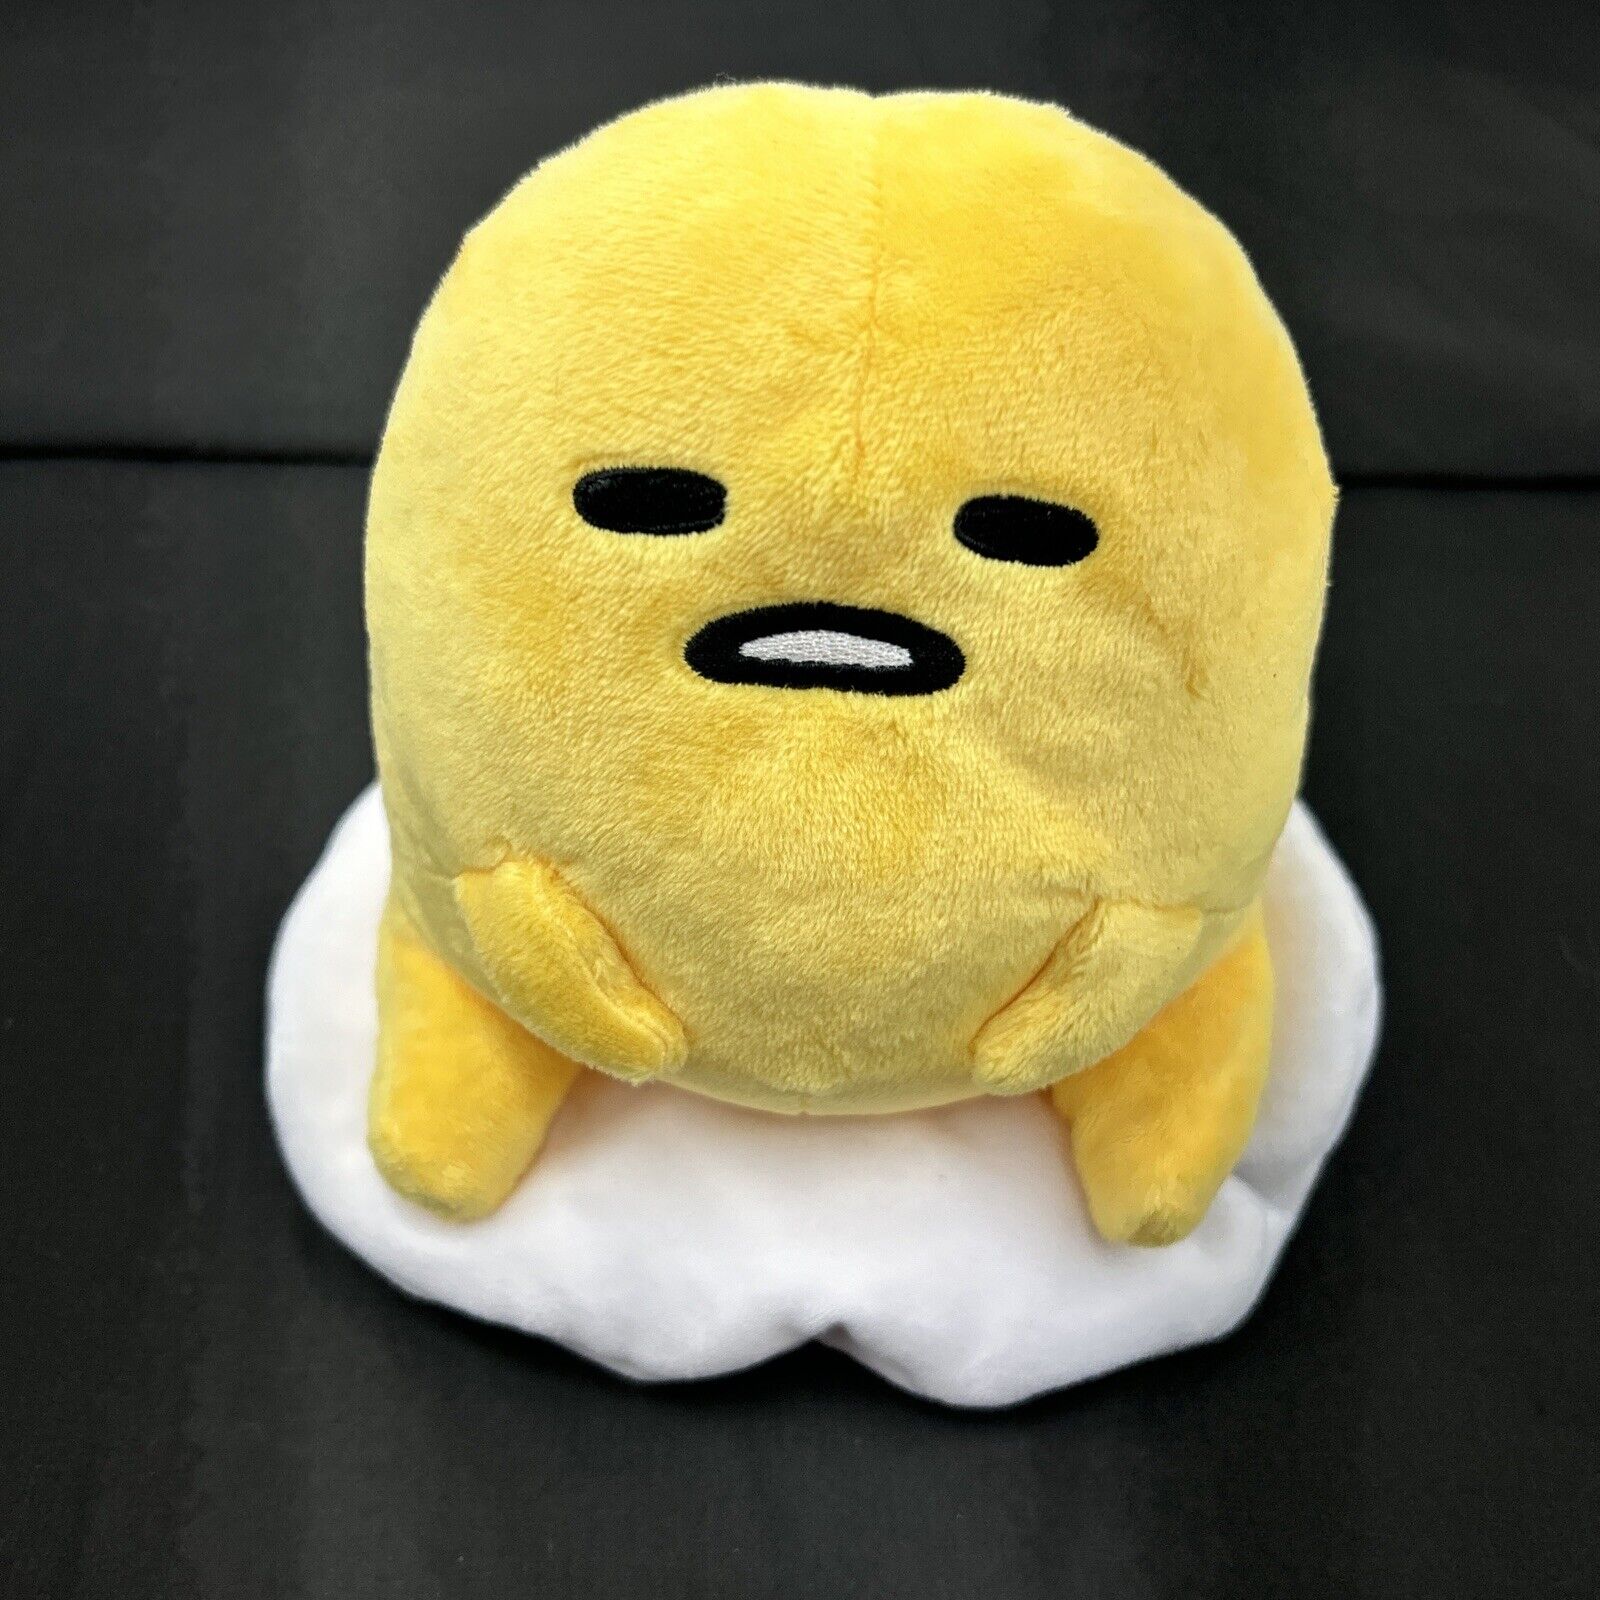 Gudetama The Lazy Egg Sitting Plush Sanrio Stuffed Animal Toy Cute Kawaii 6 Inch